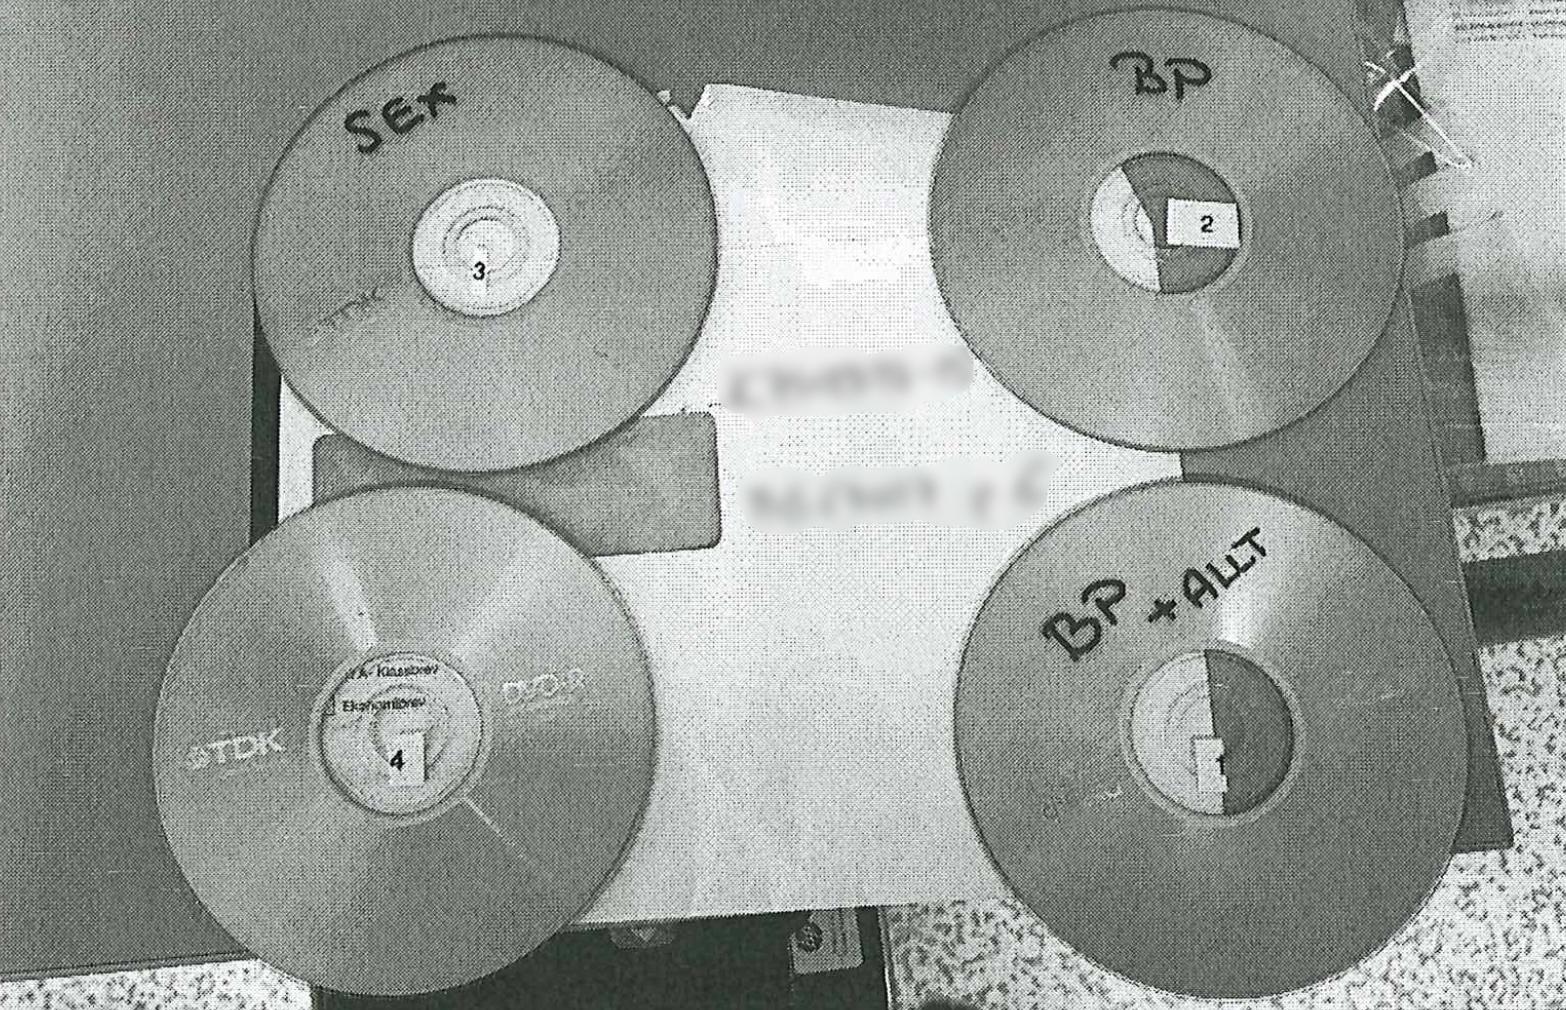 Cd- och dvd-skivor hittades vid husrannasakan hos mannen.